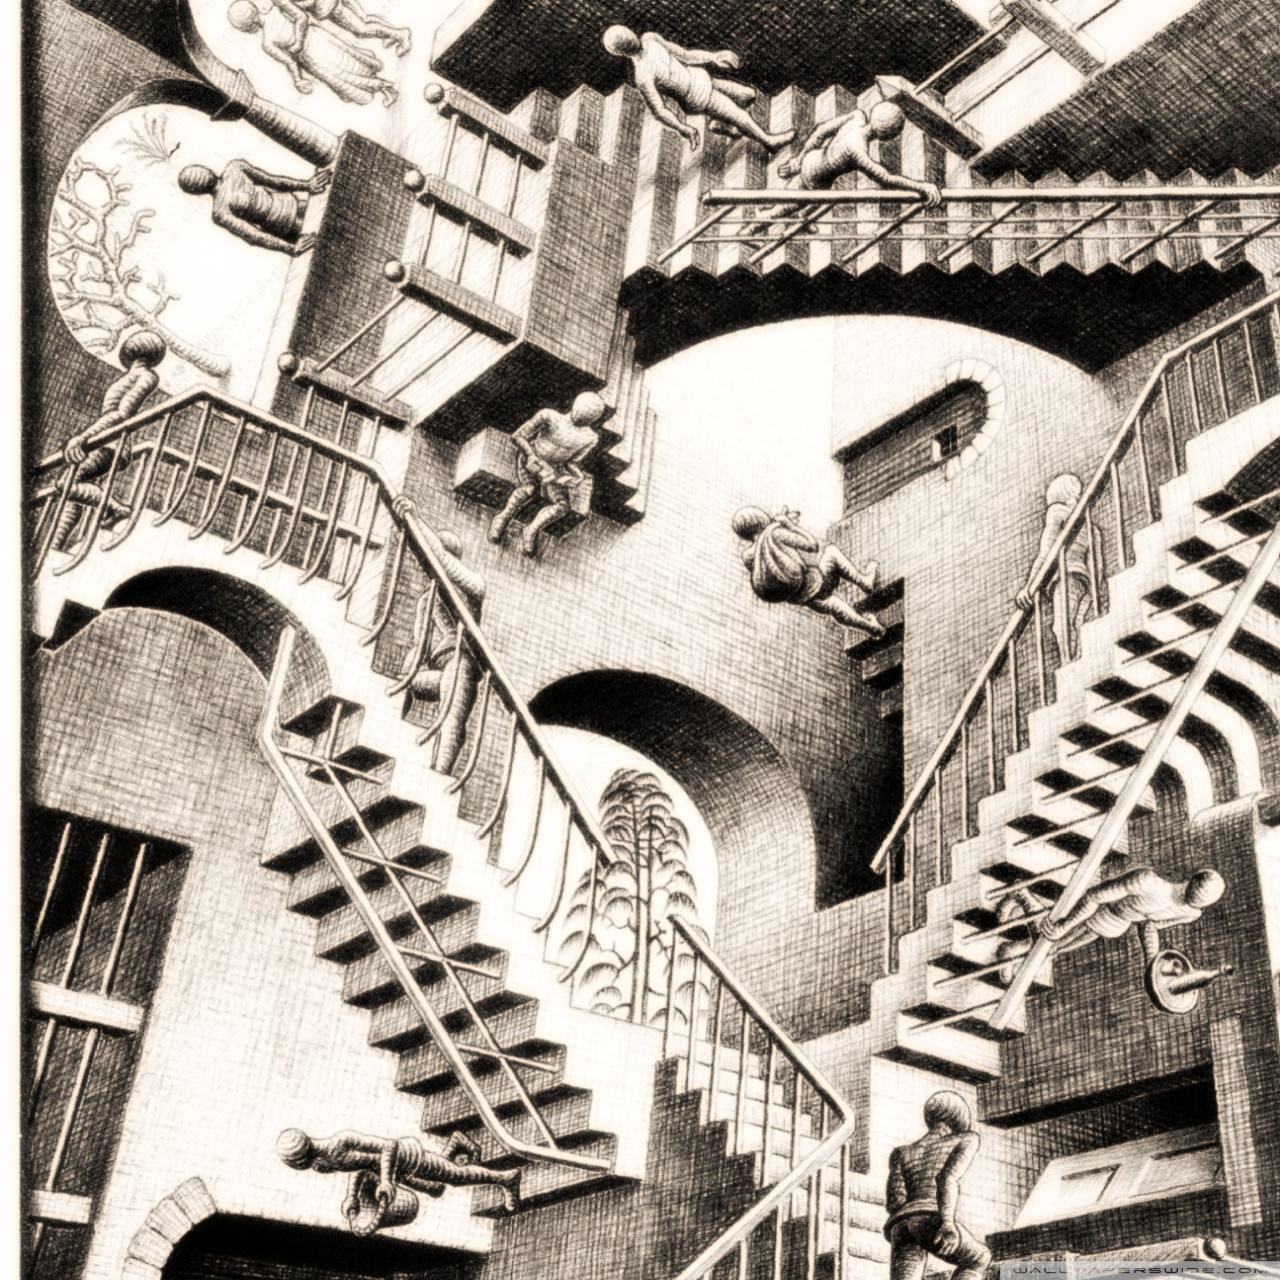 Mc Escher Relativity , HD Wallpaper & Backgrounds